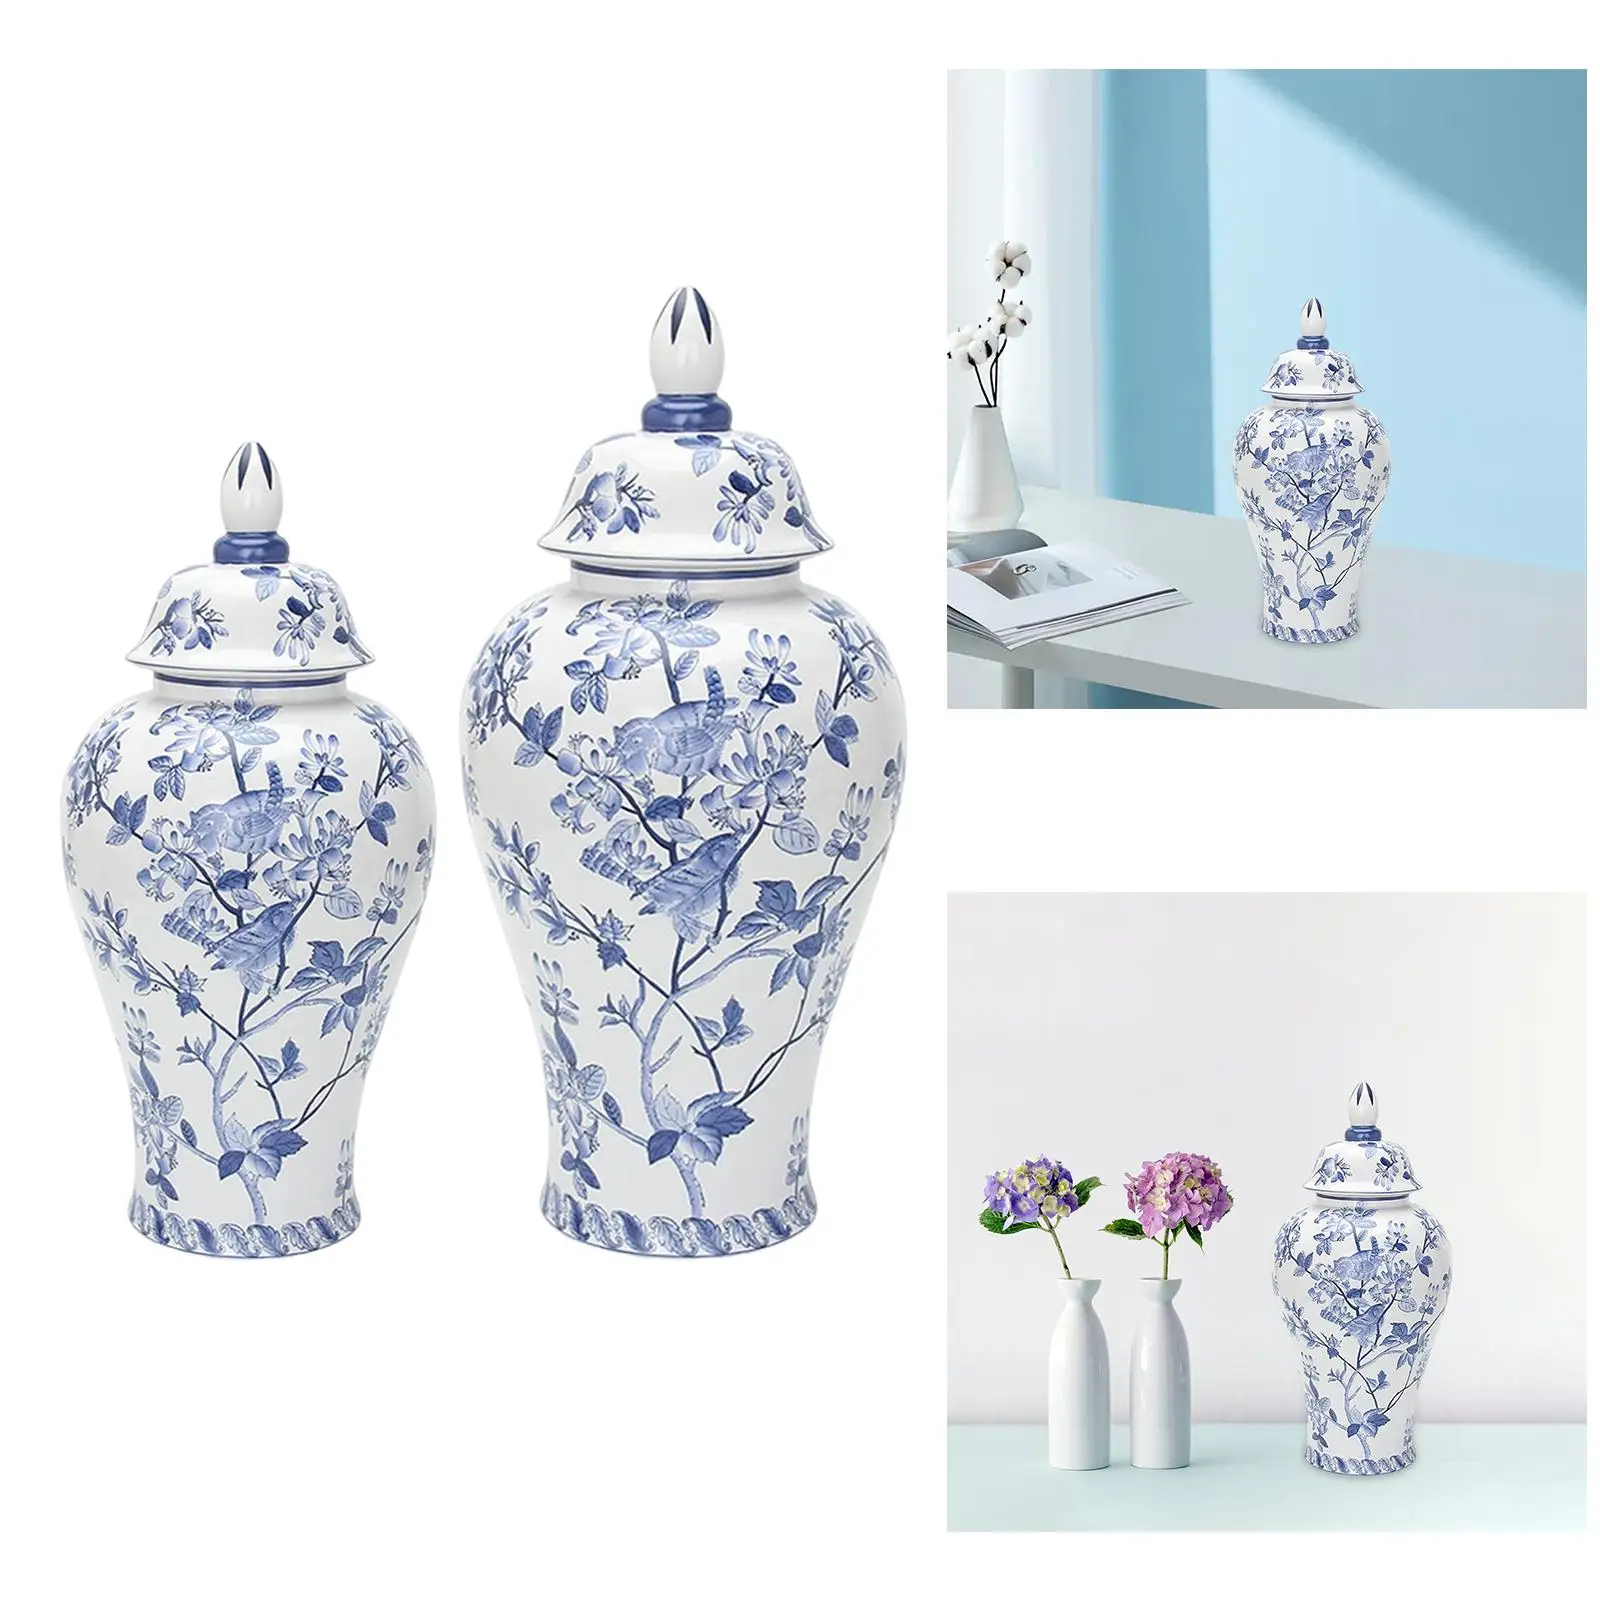 Porcelain Ginger Jar Planter Storage Ceramic Flower Vase for Bedroom Home